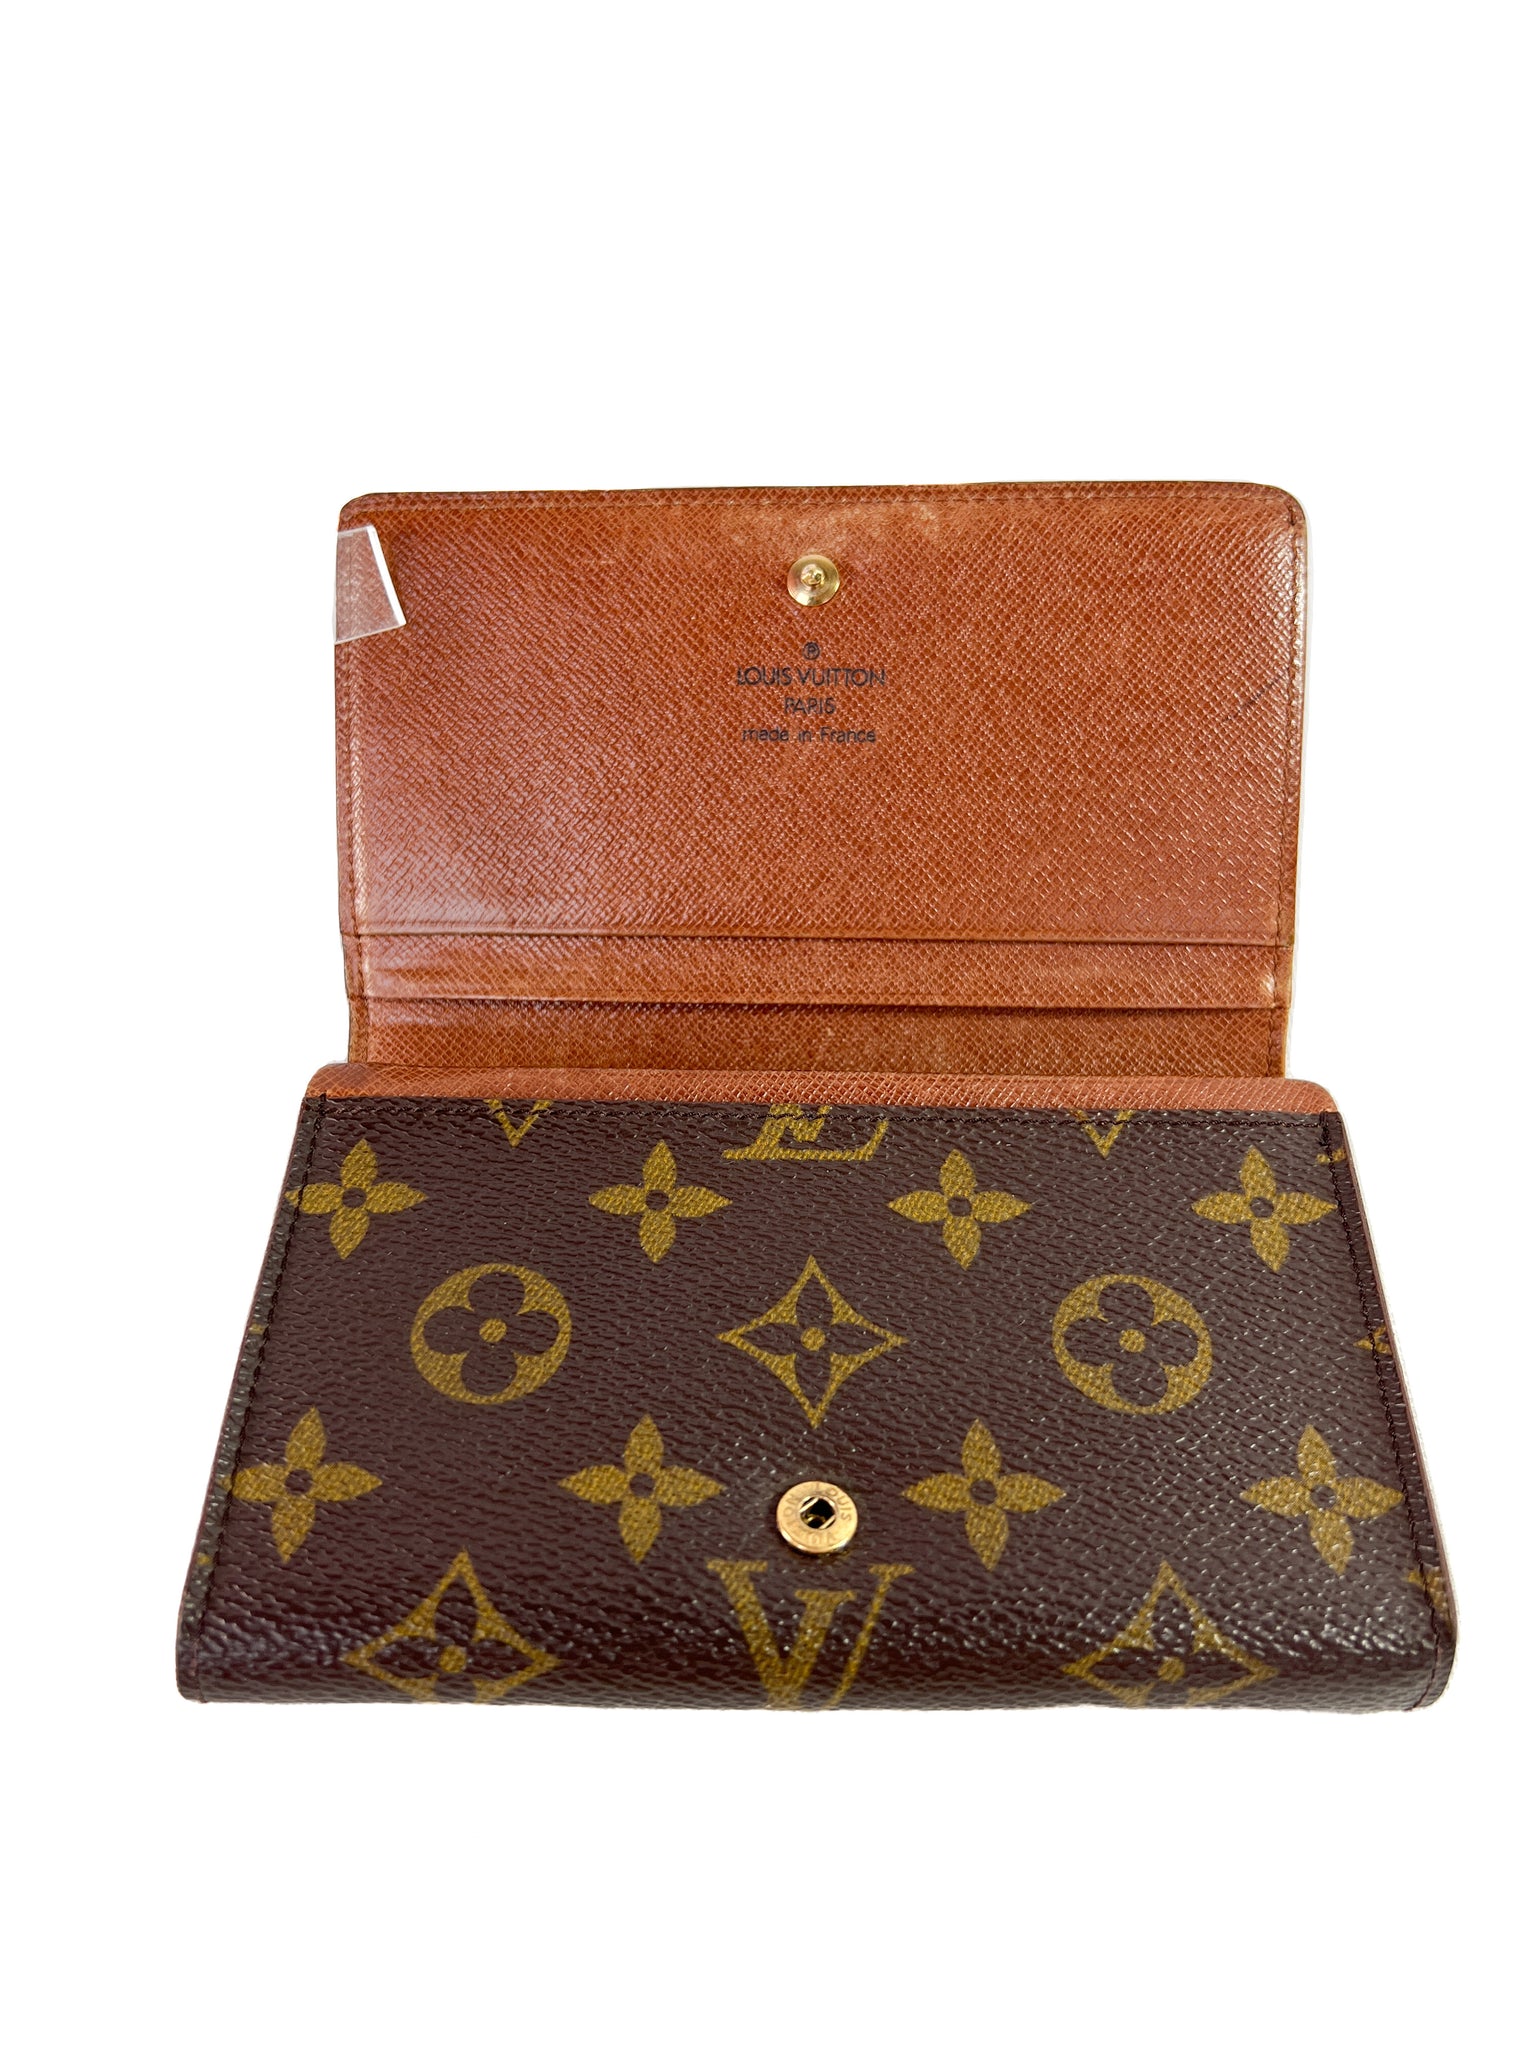 Louis Vuitton Vintage Leather Wallet